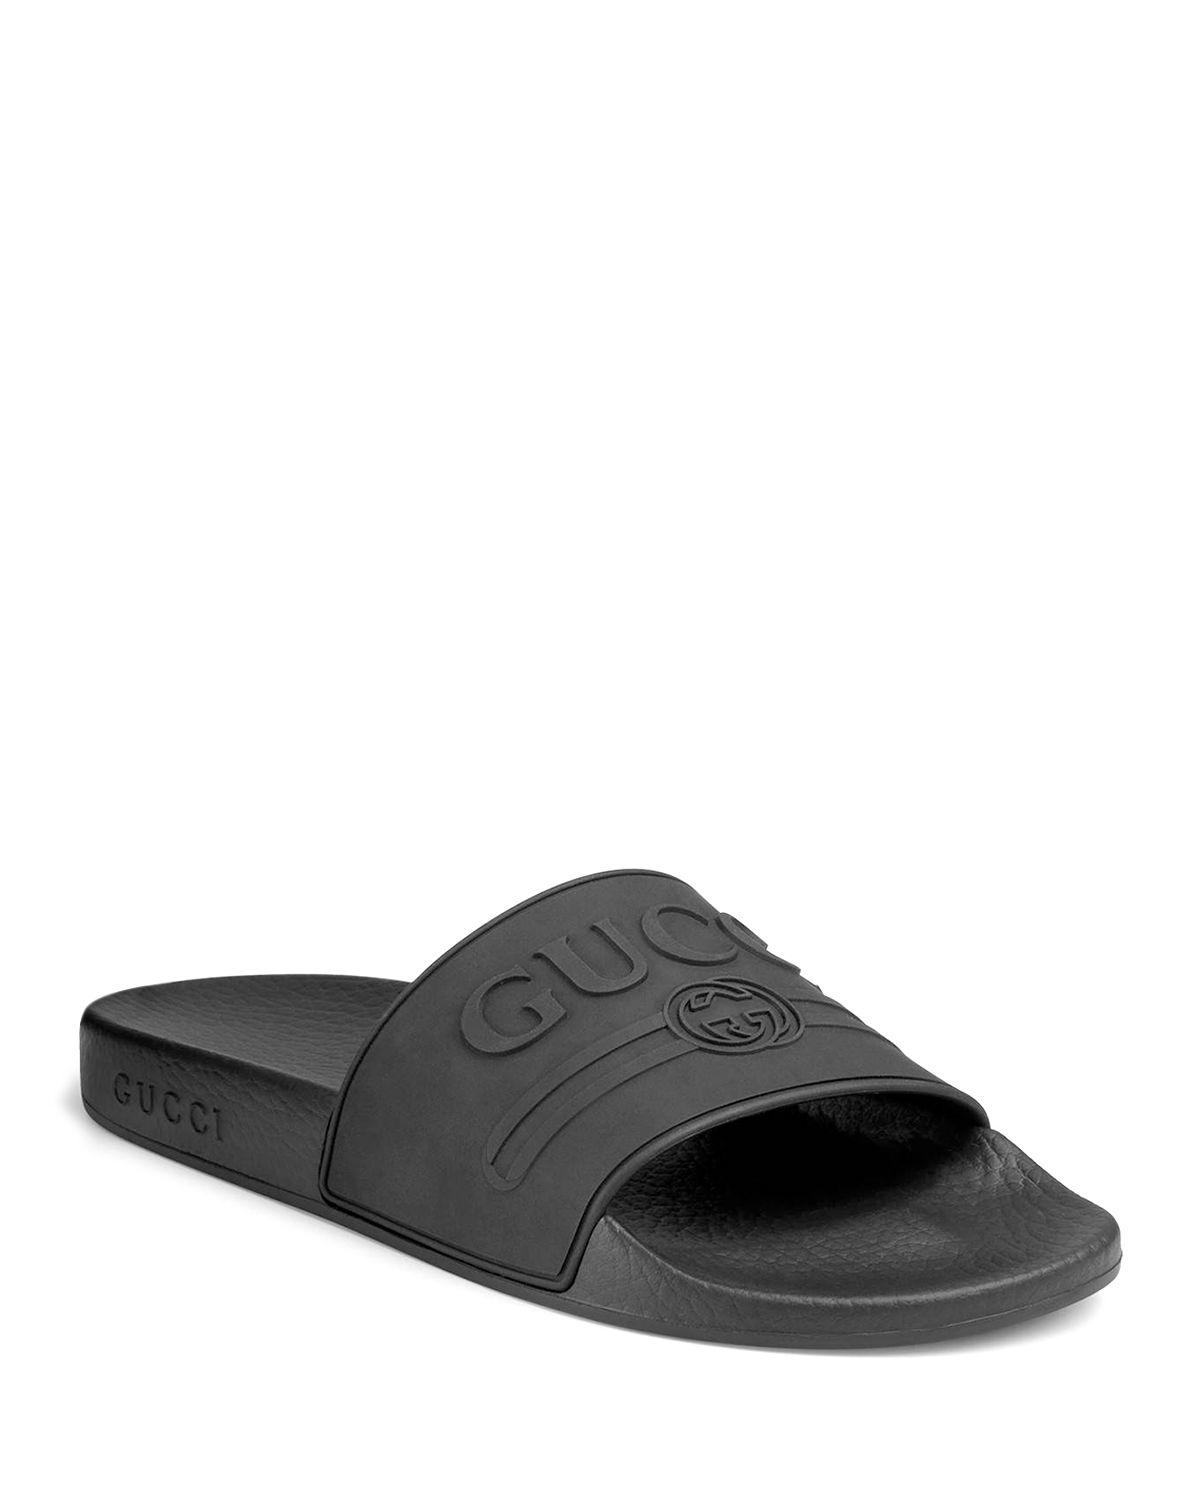 Gucci Rubber Pursuit Logo-embossed Slides in Black for Men - Save 60%